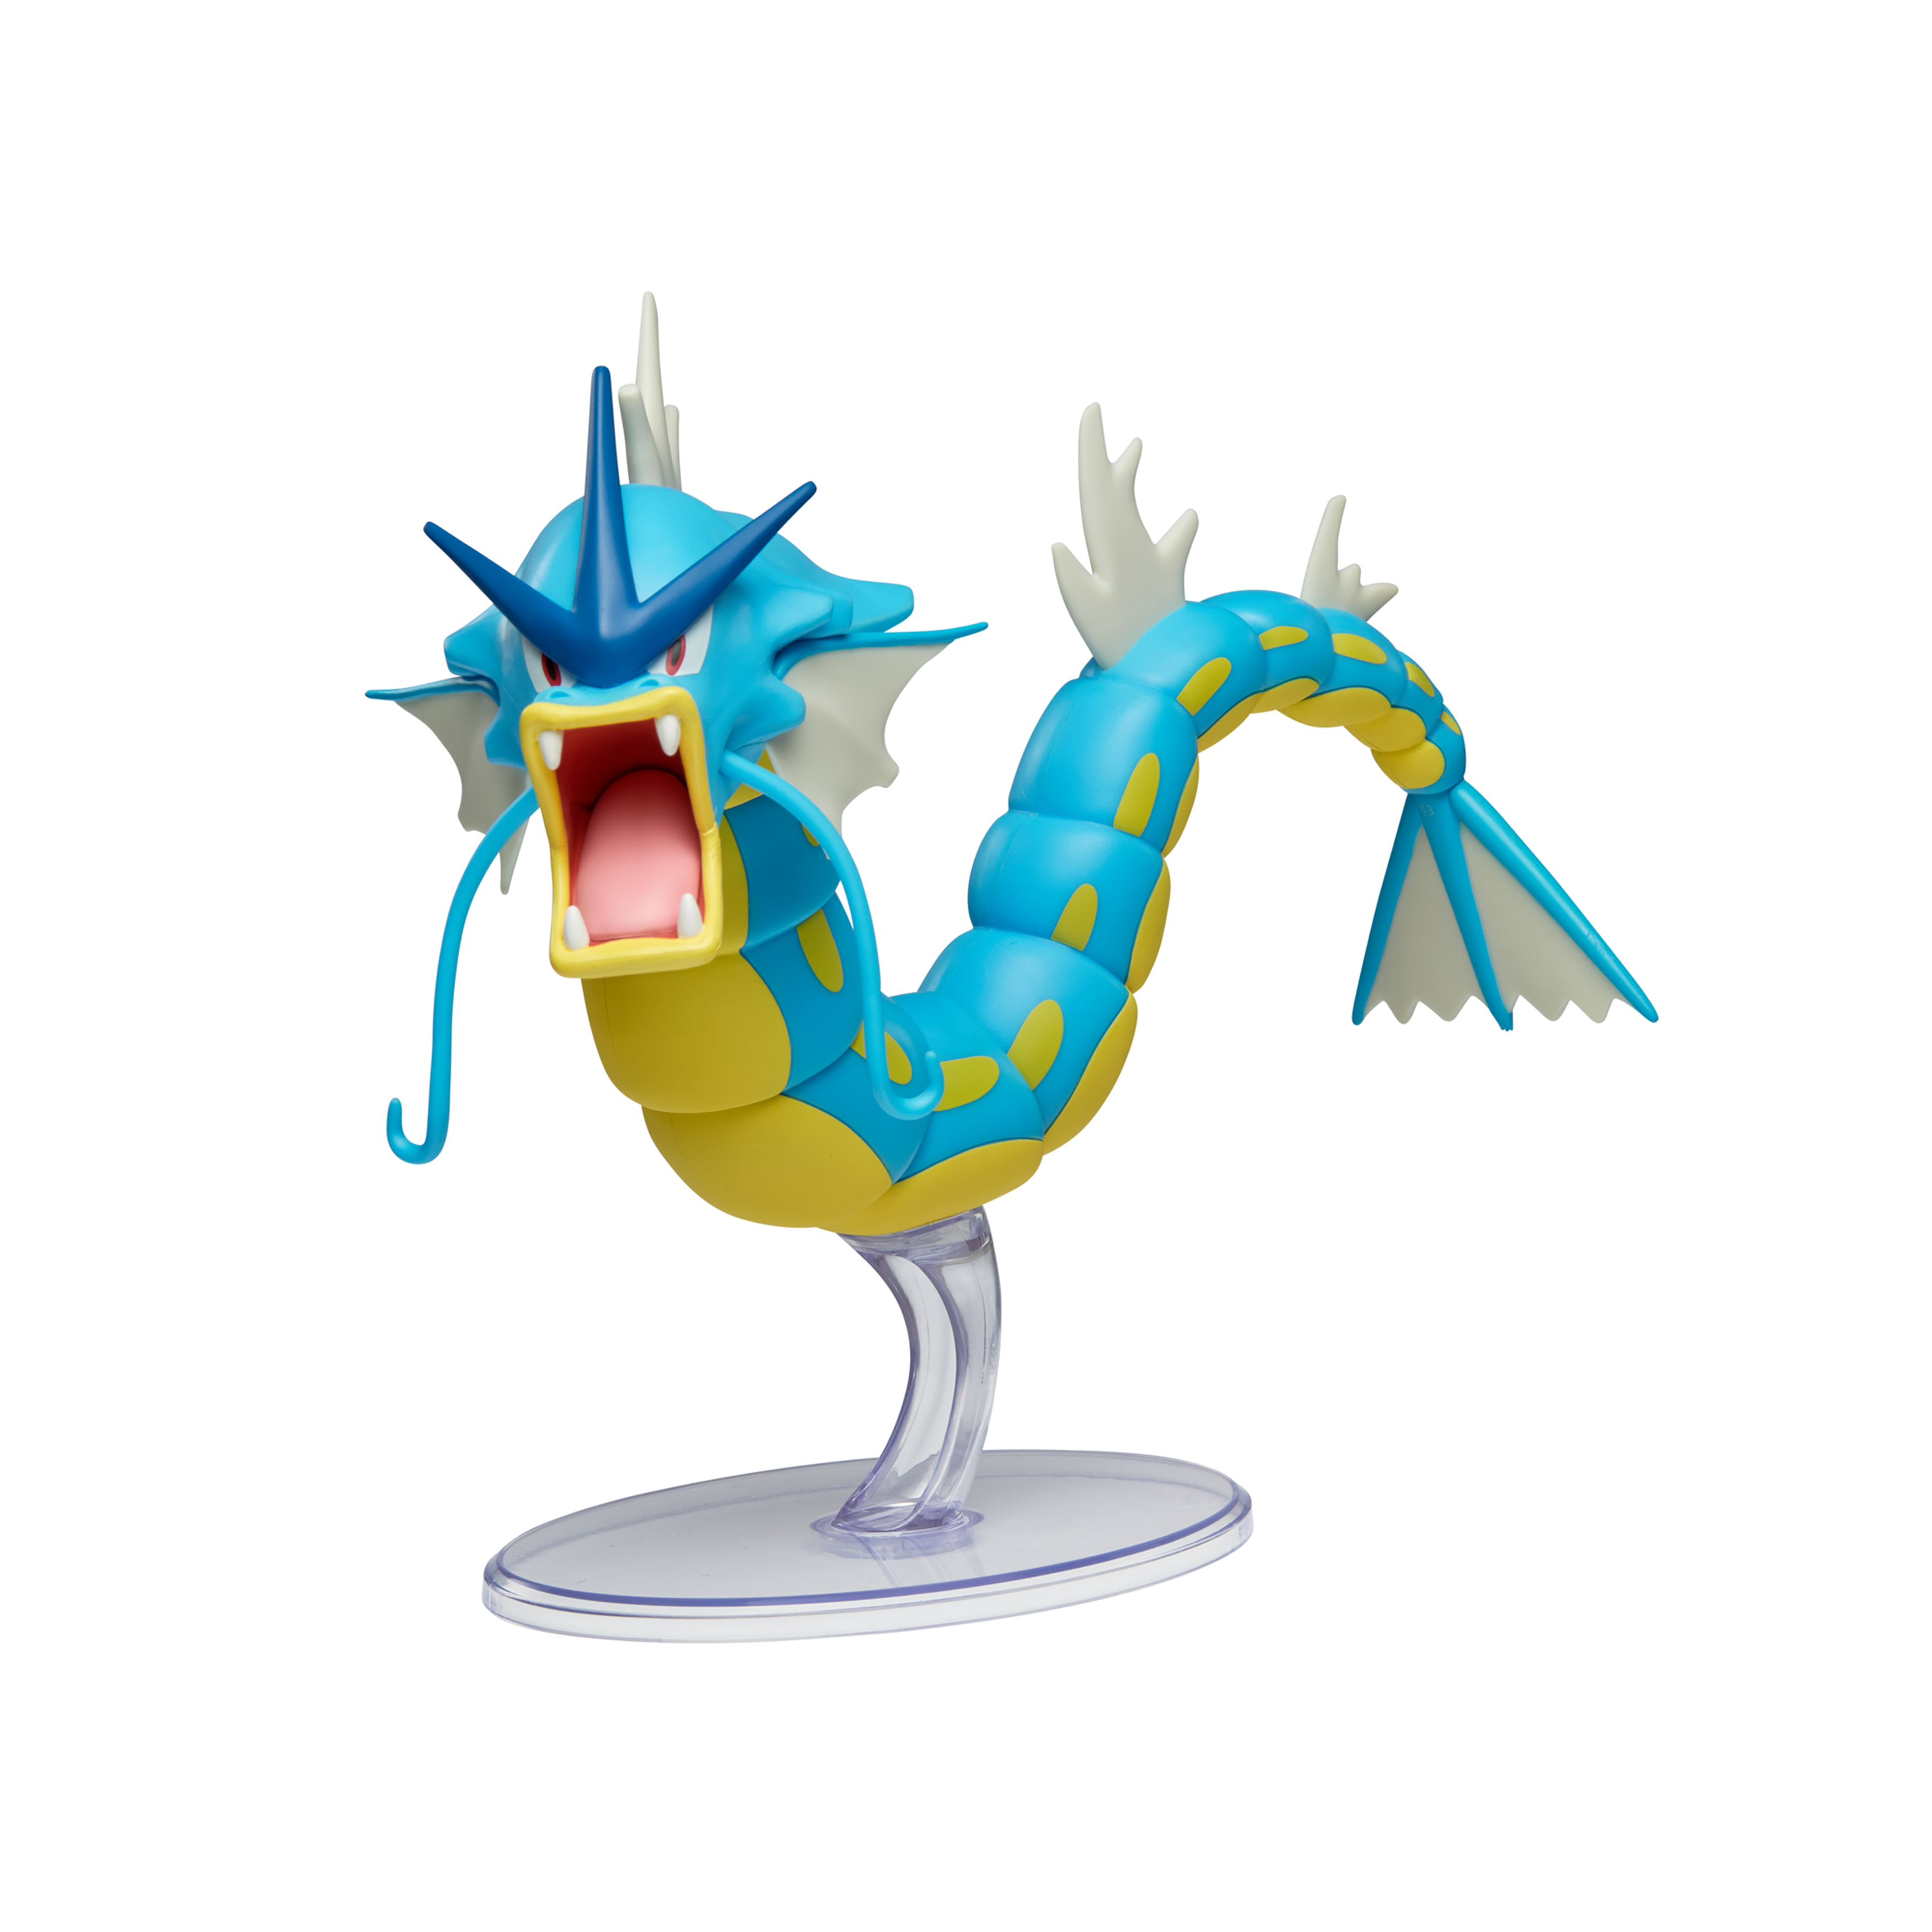 Garados - Figur Pokémon Epische 30 cm